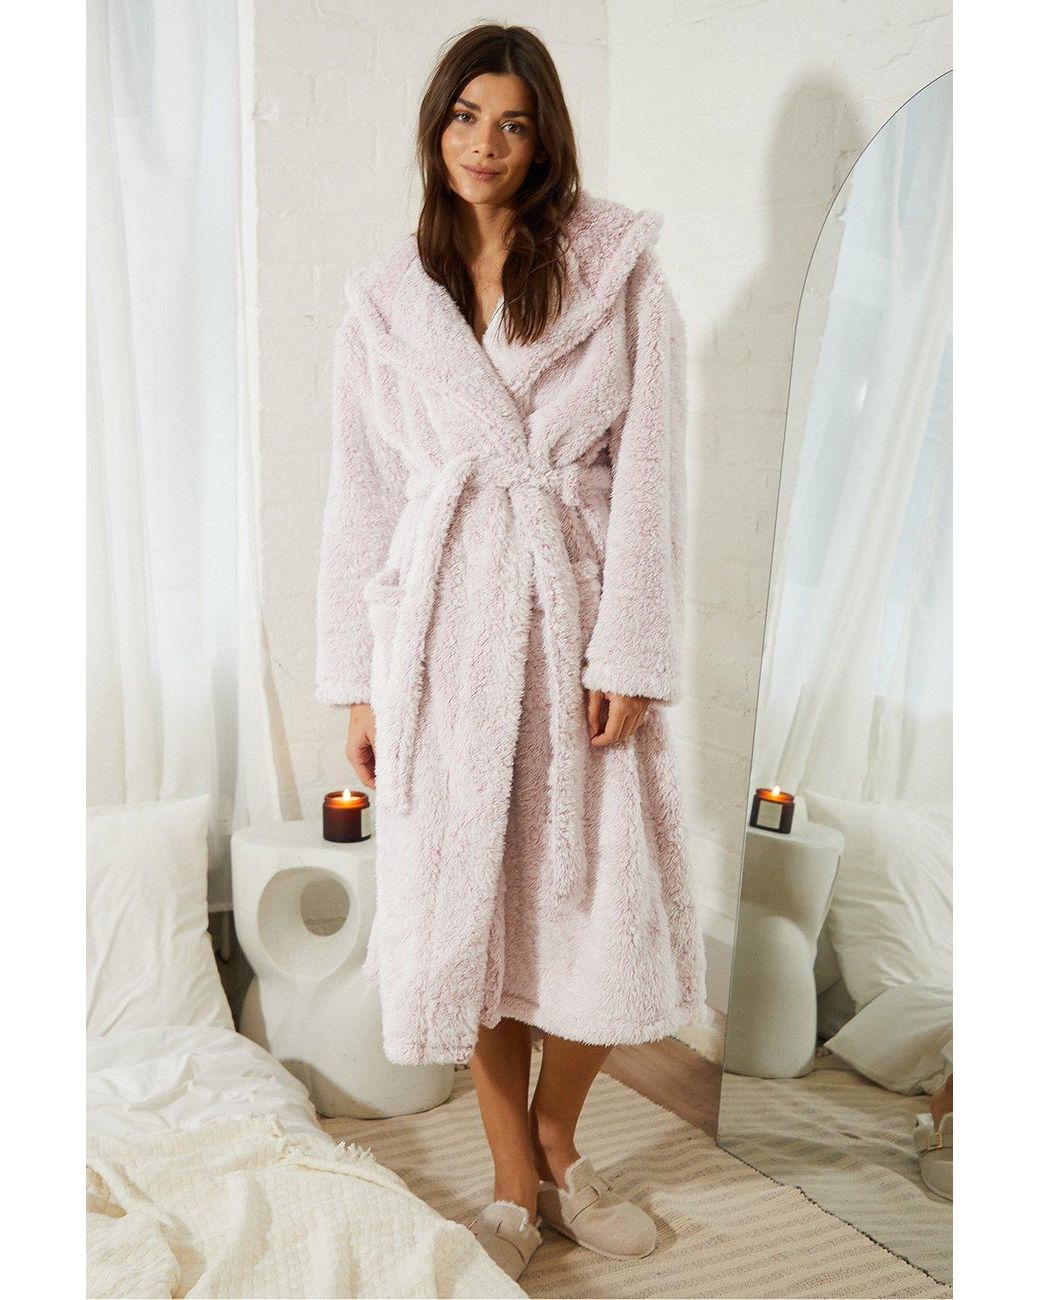 Soft Blush Pink Robe| Lingerie|Women's Loungewear|Nightwear